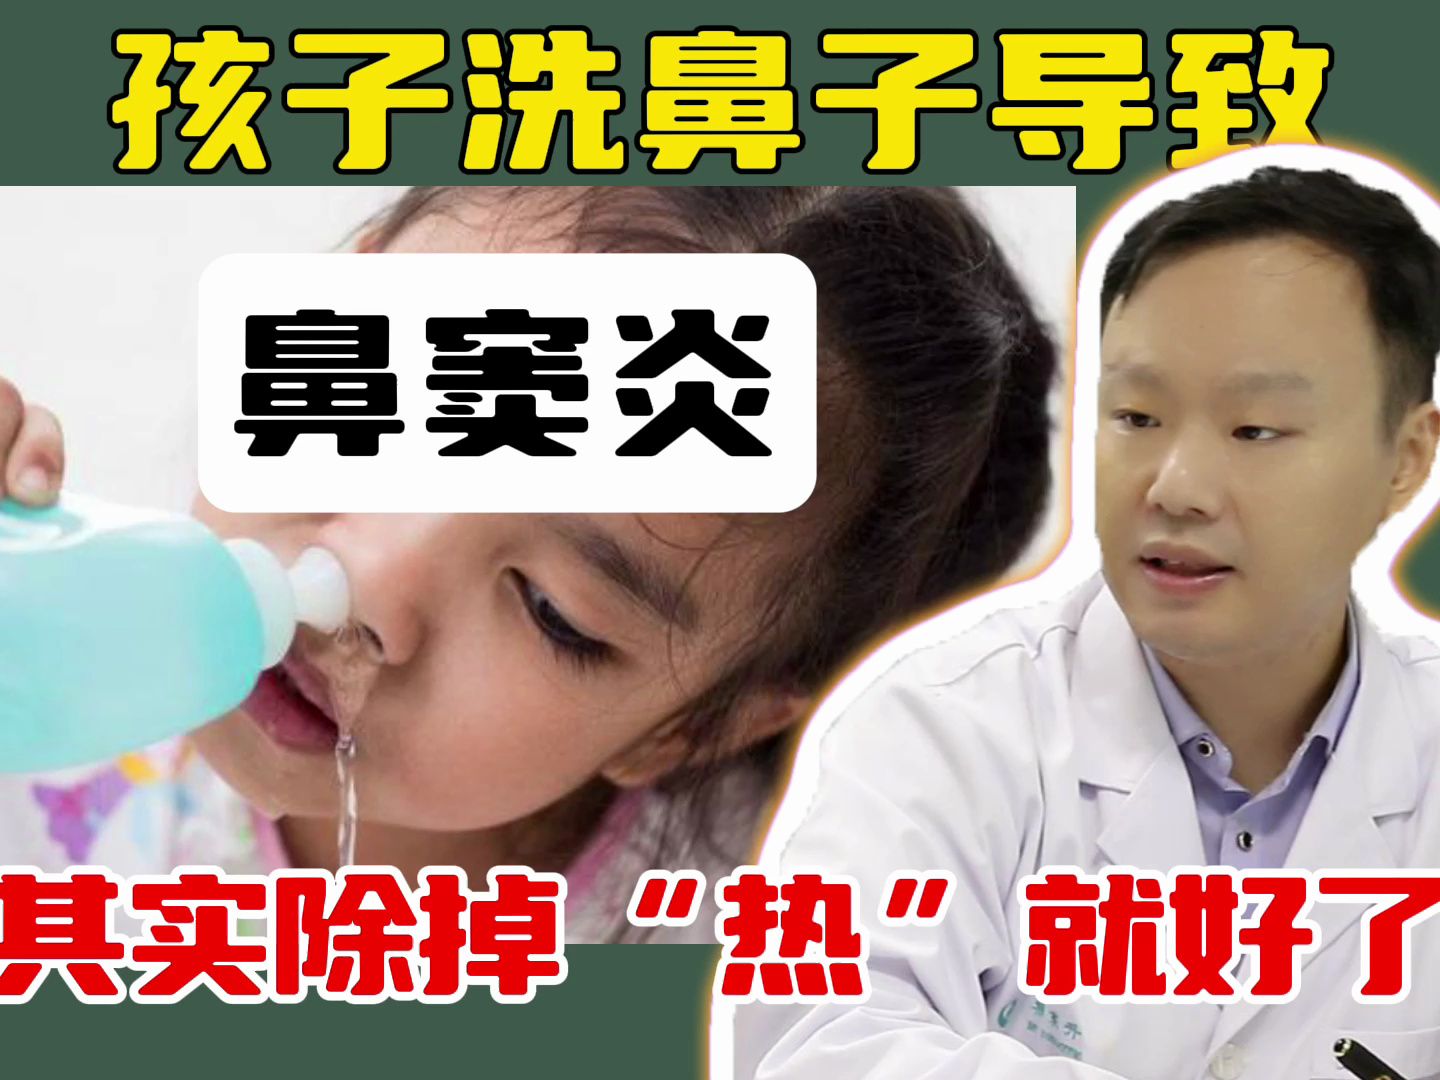 孩子洗鼻子导致鼻窦炎 其实除掉“热”就好了-横版